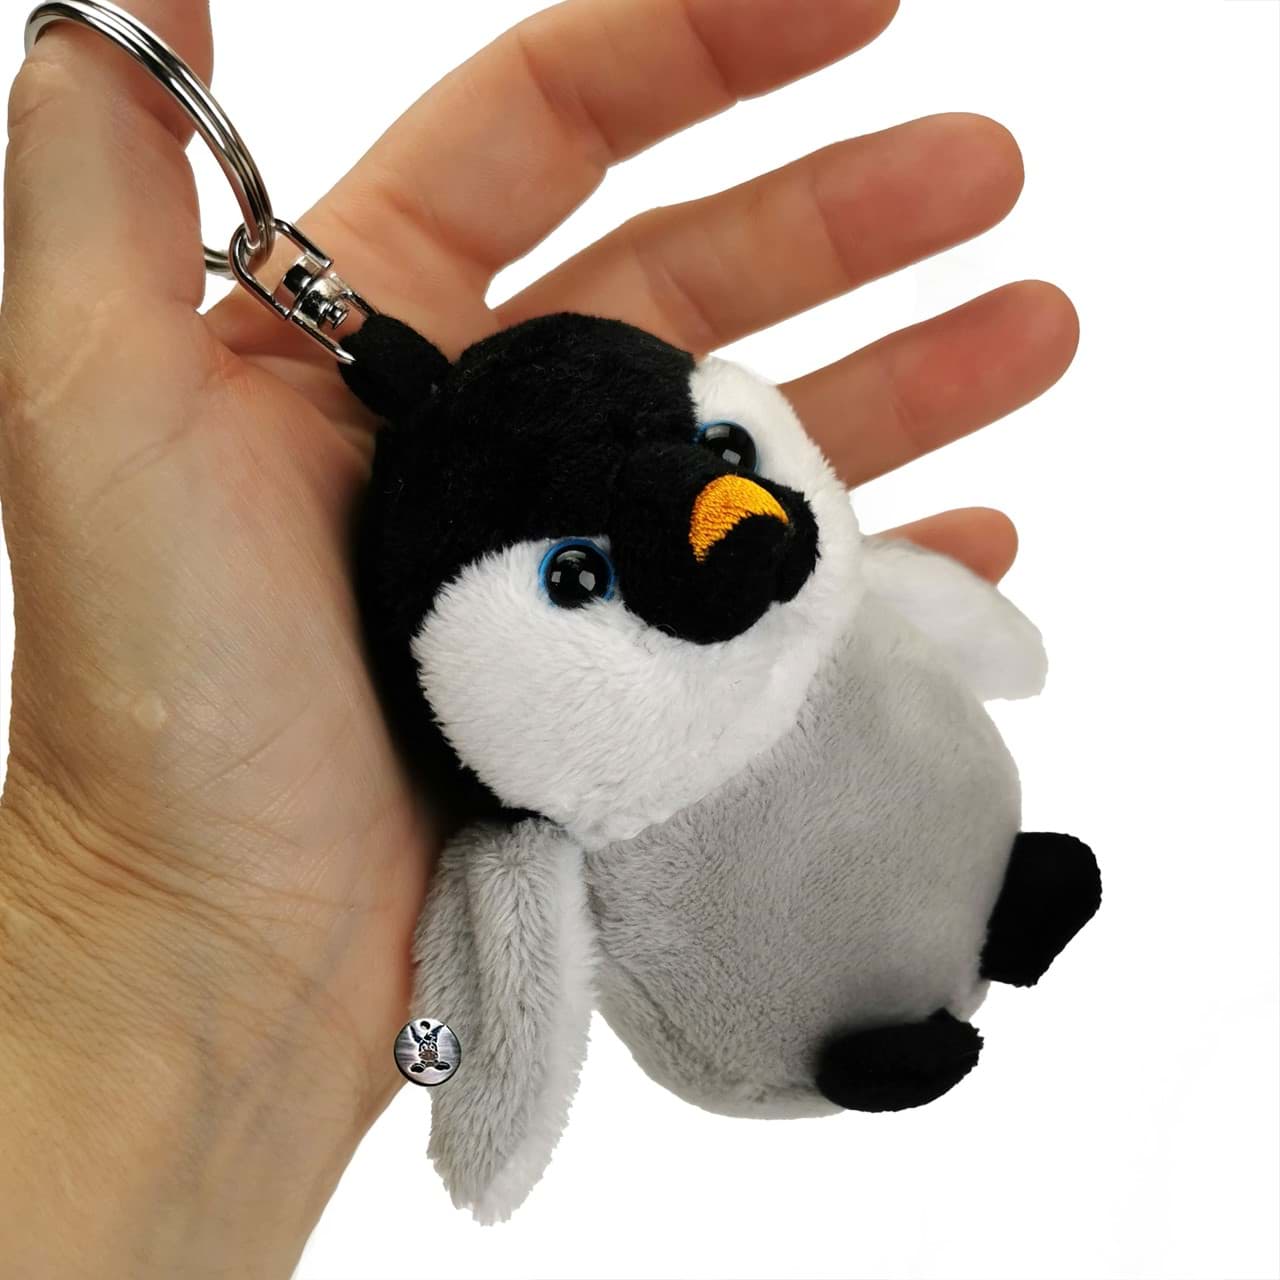 . Pinguin PIT Kuscheltier Anhänger Schlüsselanhänger  Plüschtier